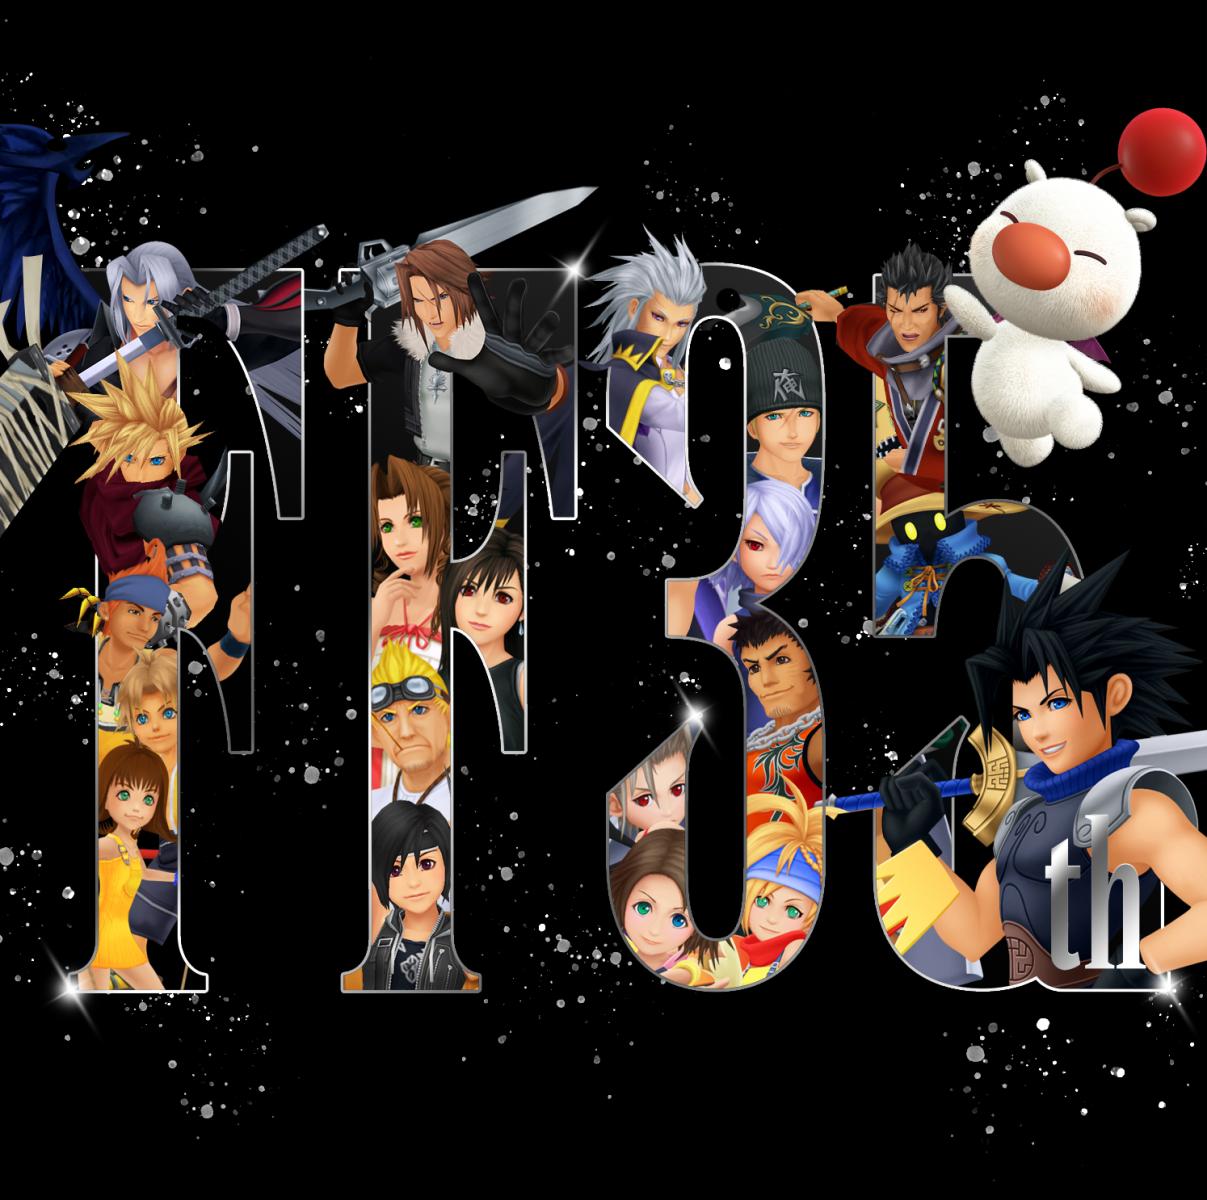 Final Fantasy 35th Anniversary Graphic x Kingdom Hearts Graphic